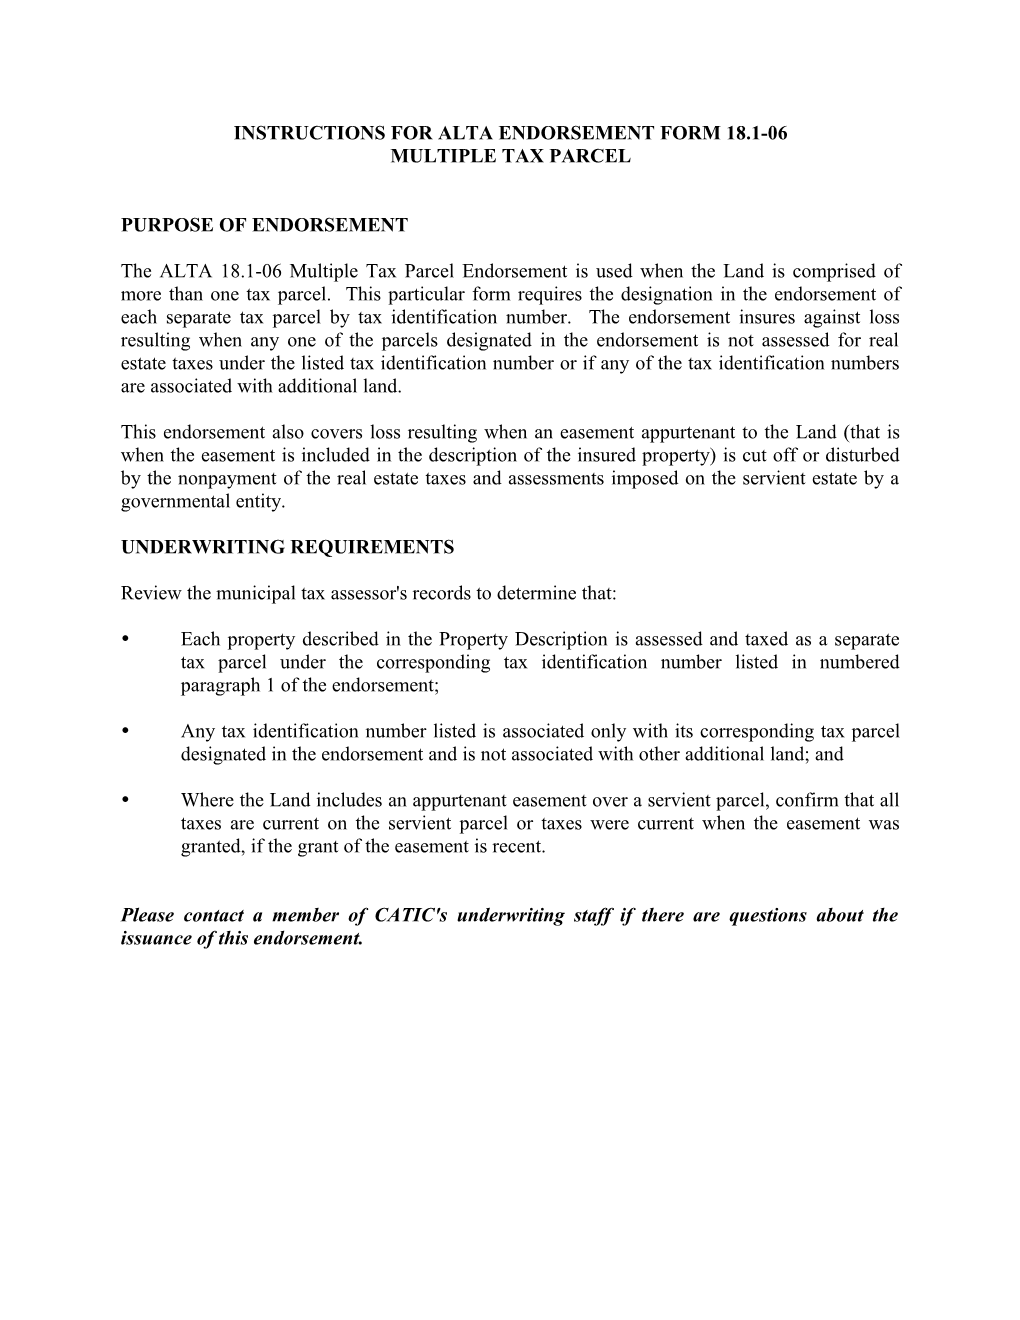 Instructions for Alta Endorsement Form 18.1-06